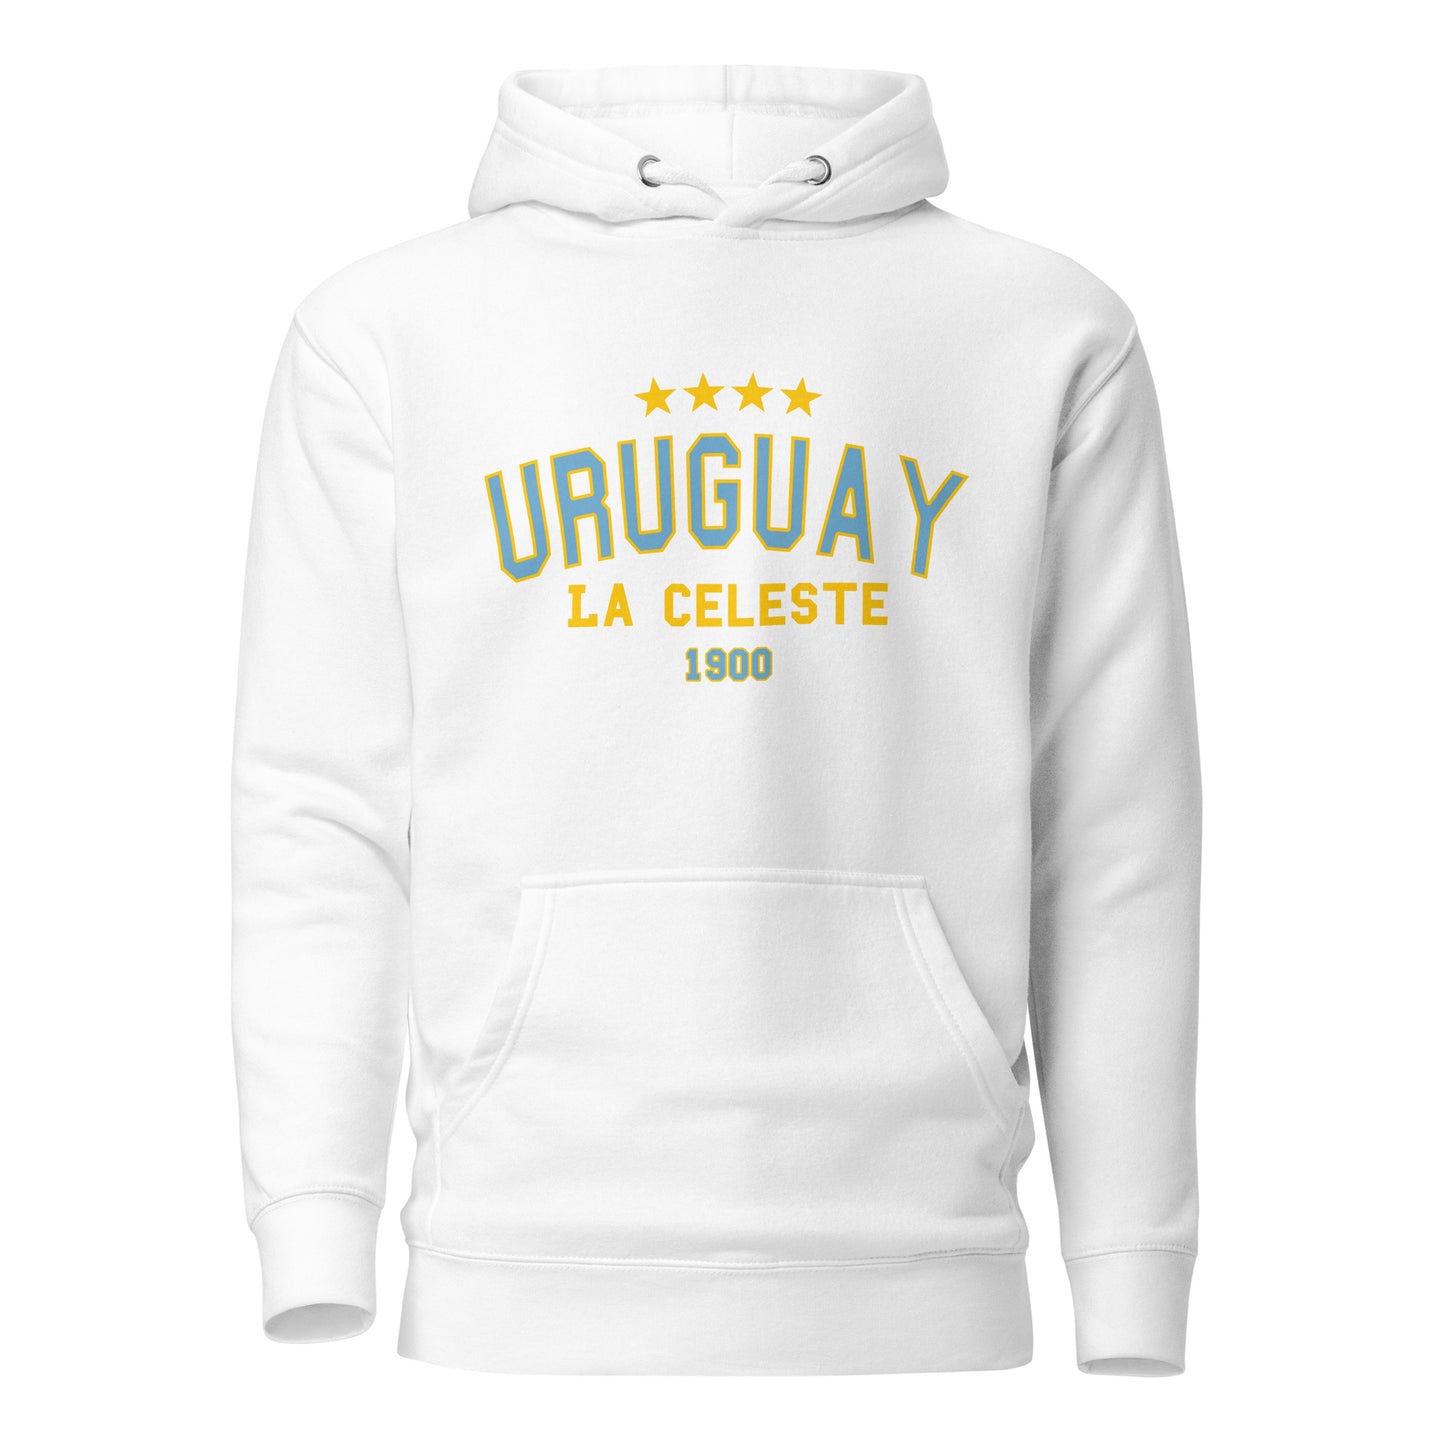 Sqdltd Uruguay WC Colegio Unisex Hoodie